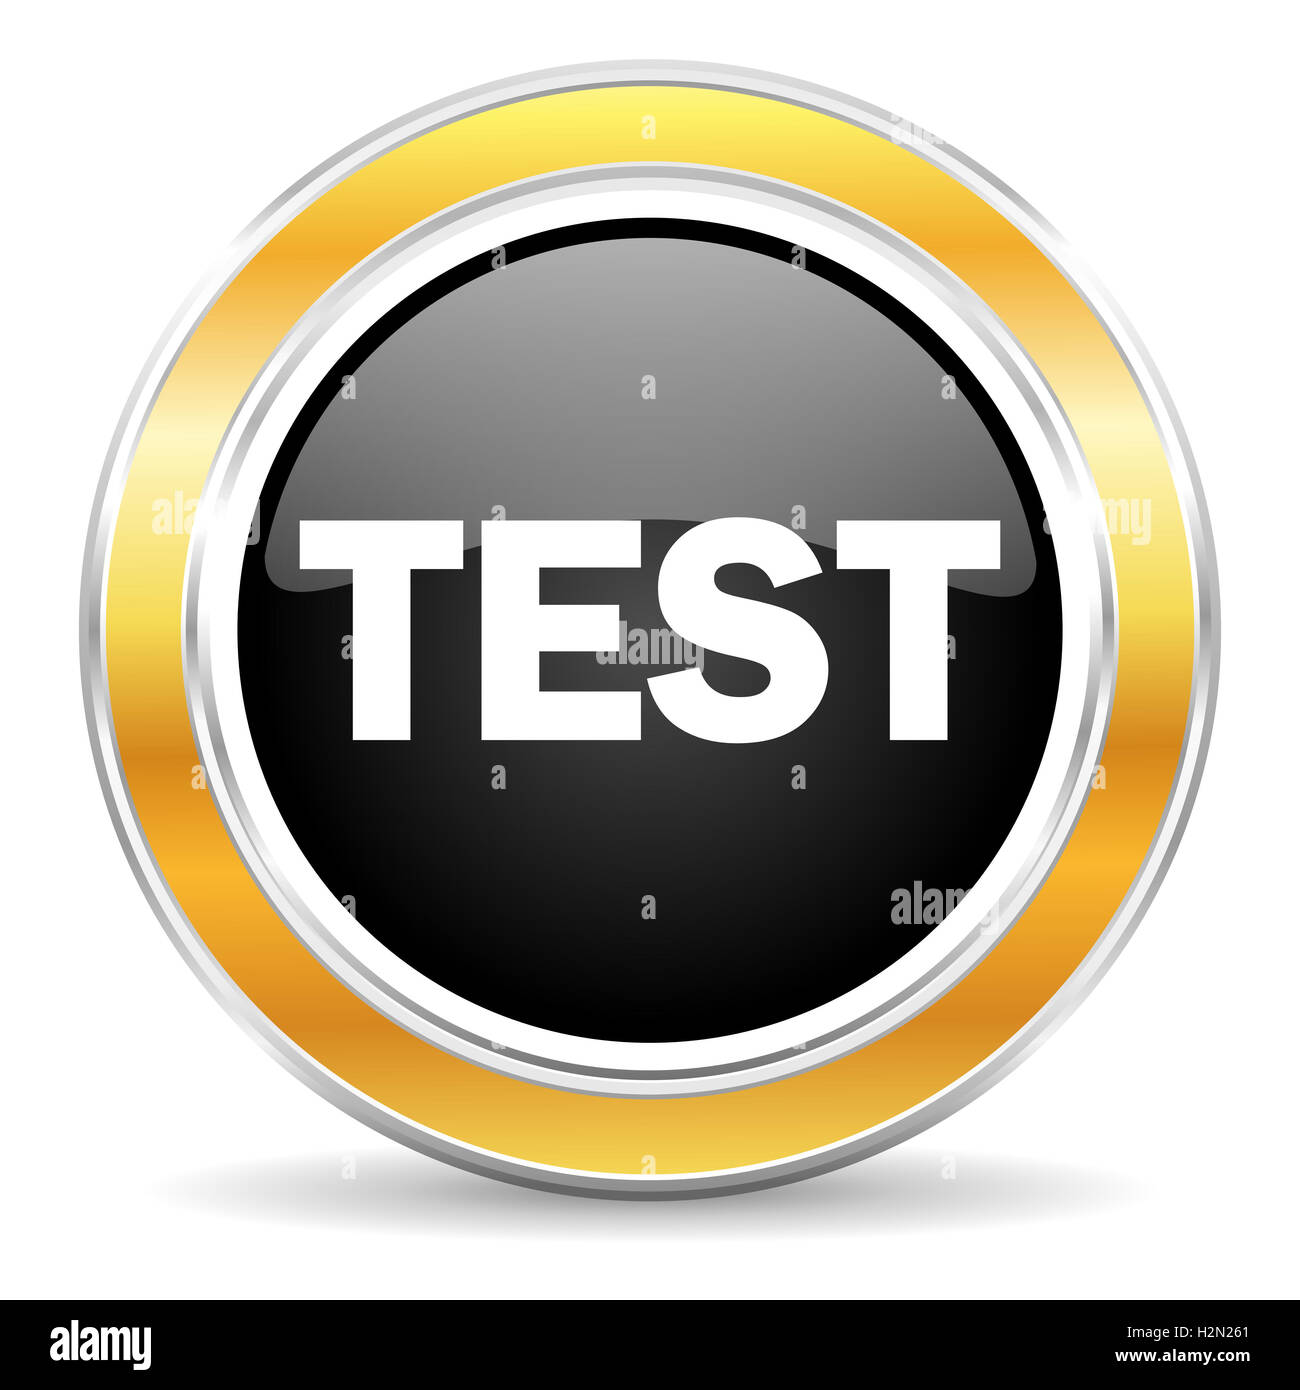 test icon Stock Photo